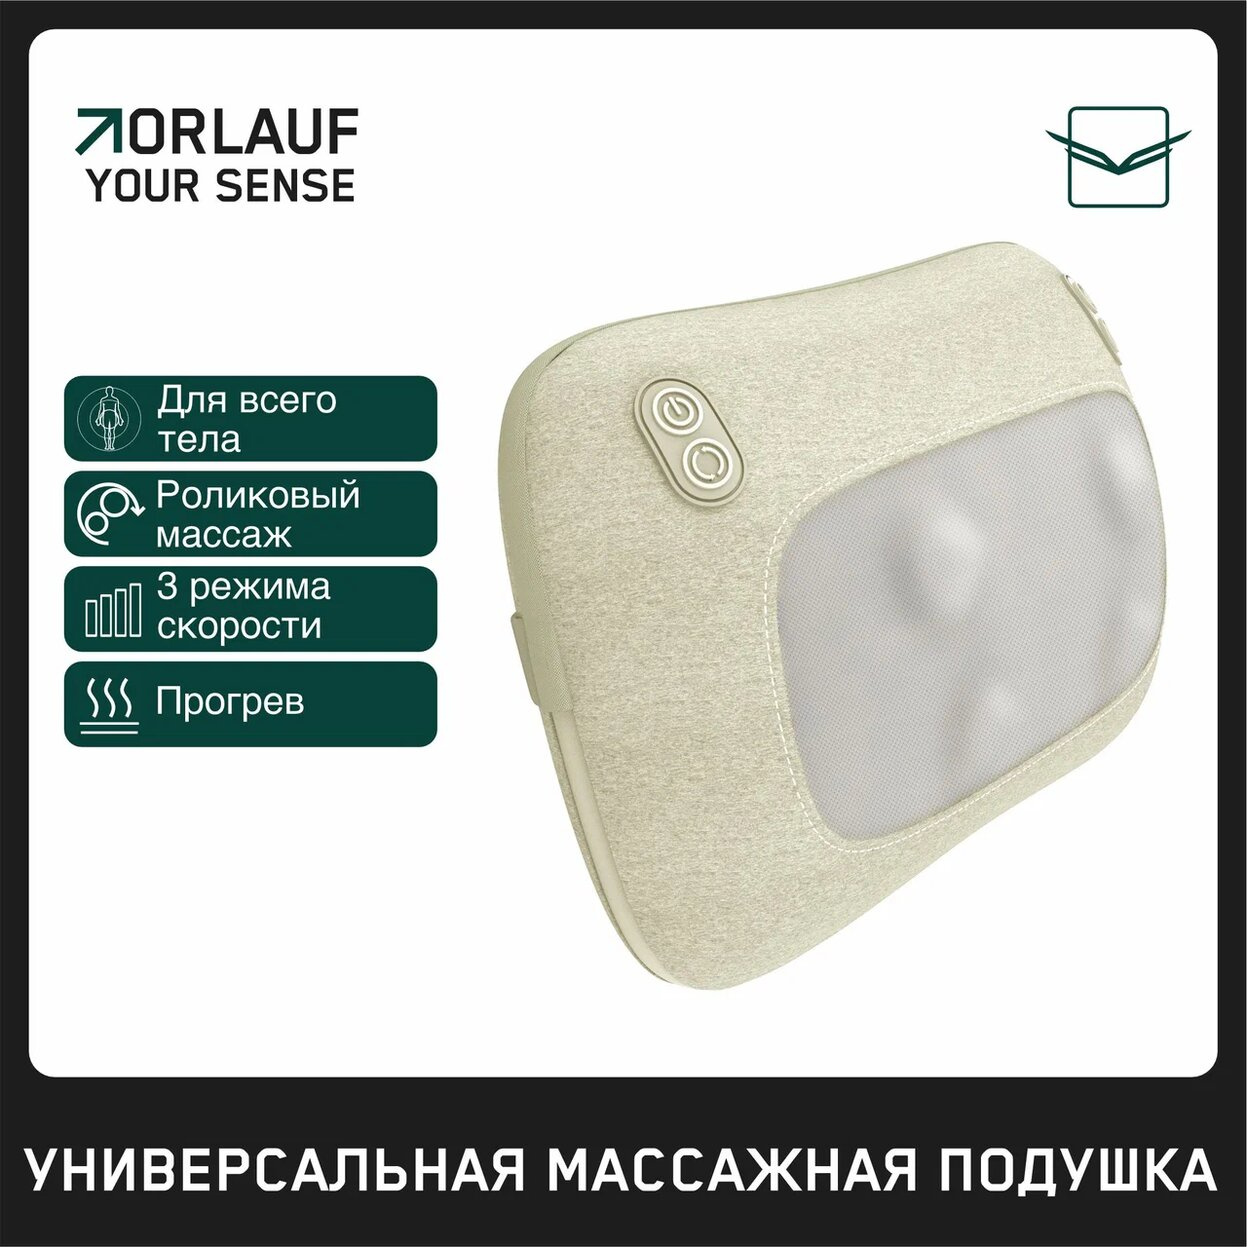 Your Sense в Омске по цене 9400 ₽ в категории массажеры Orlauf